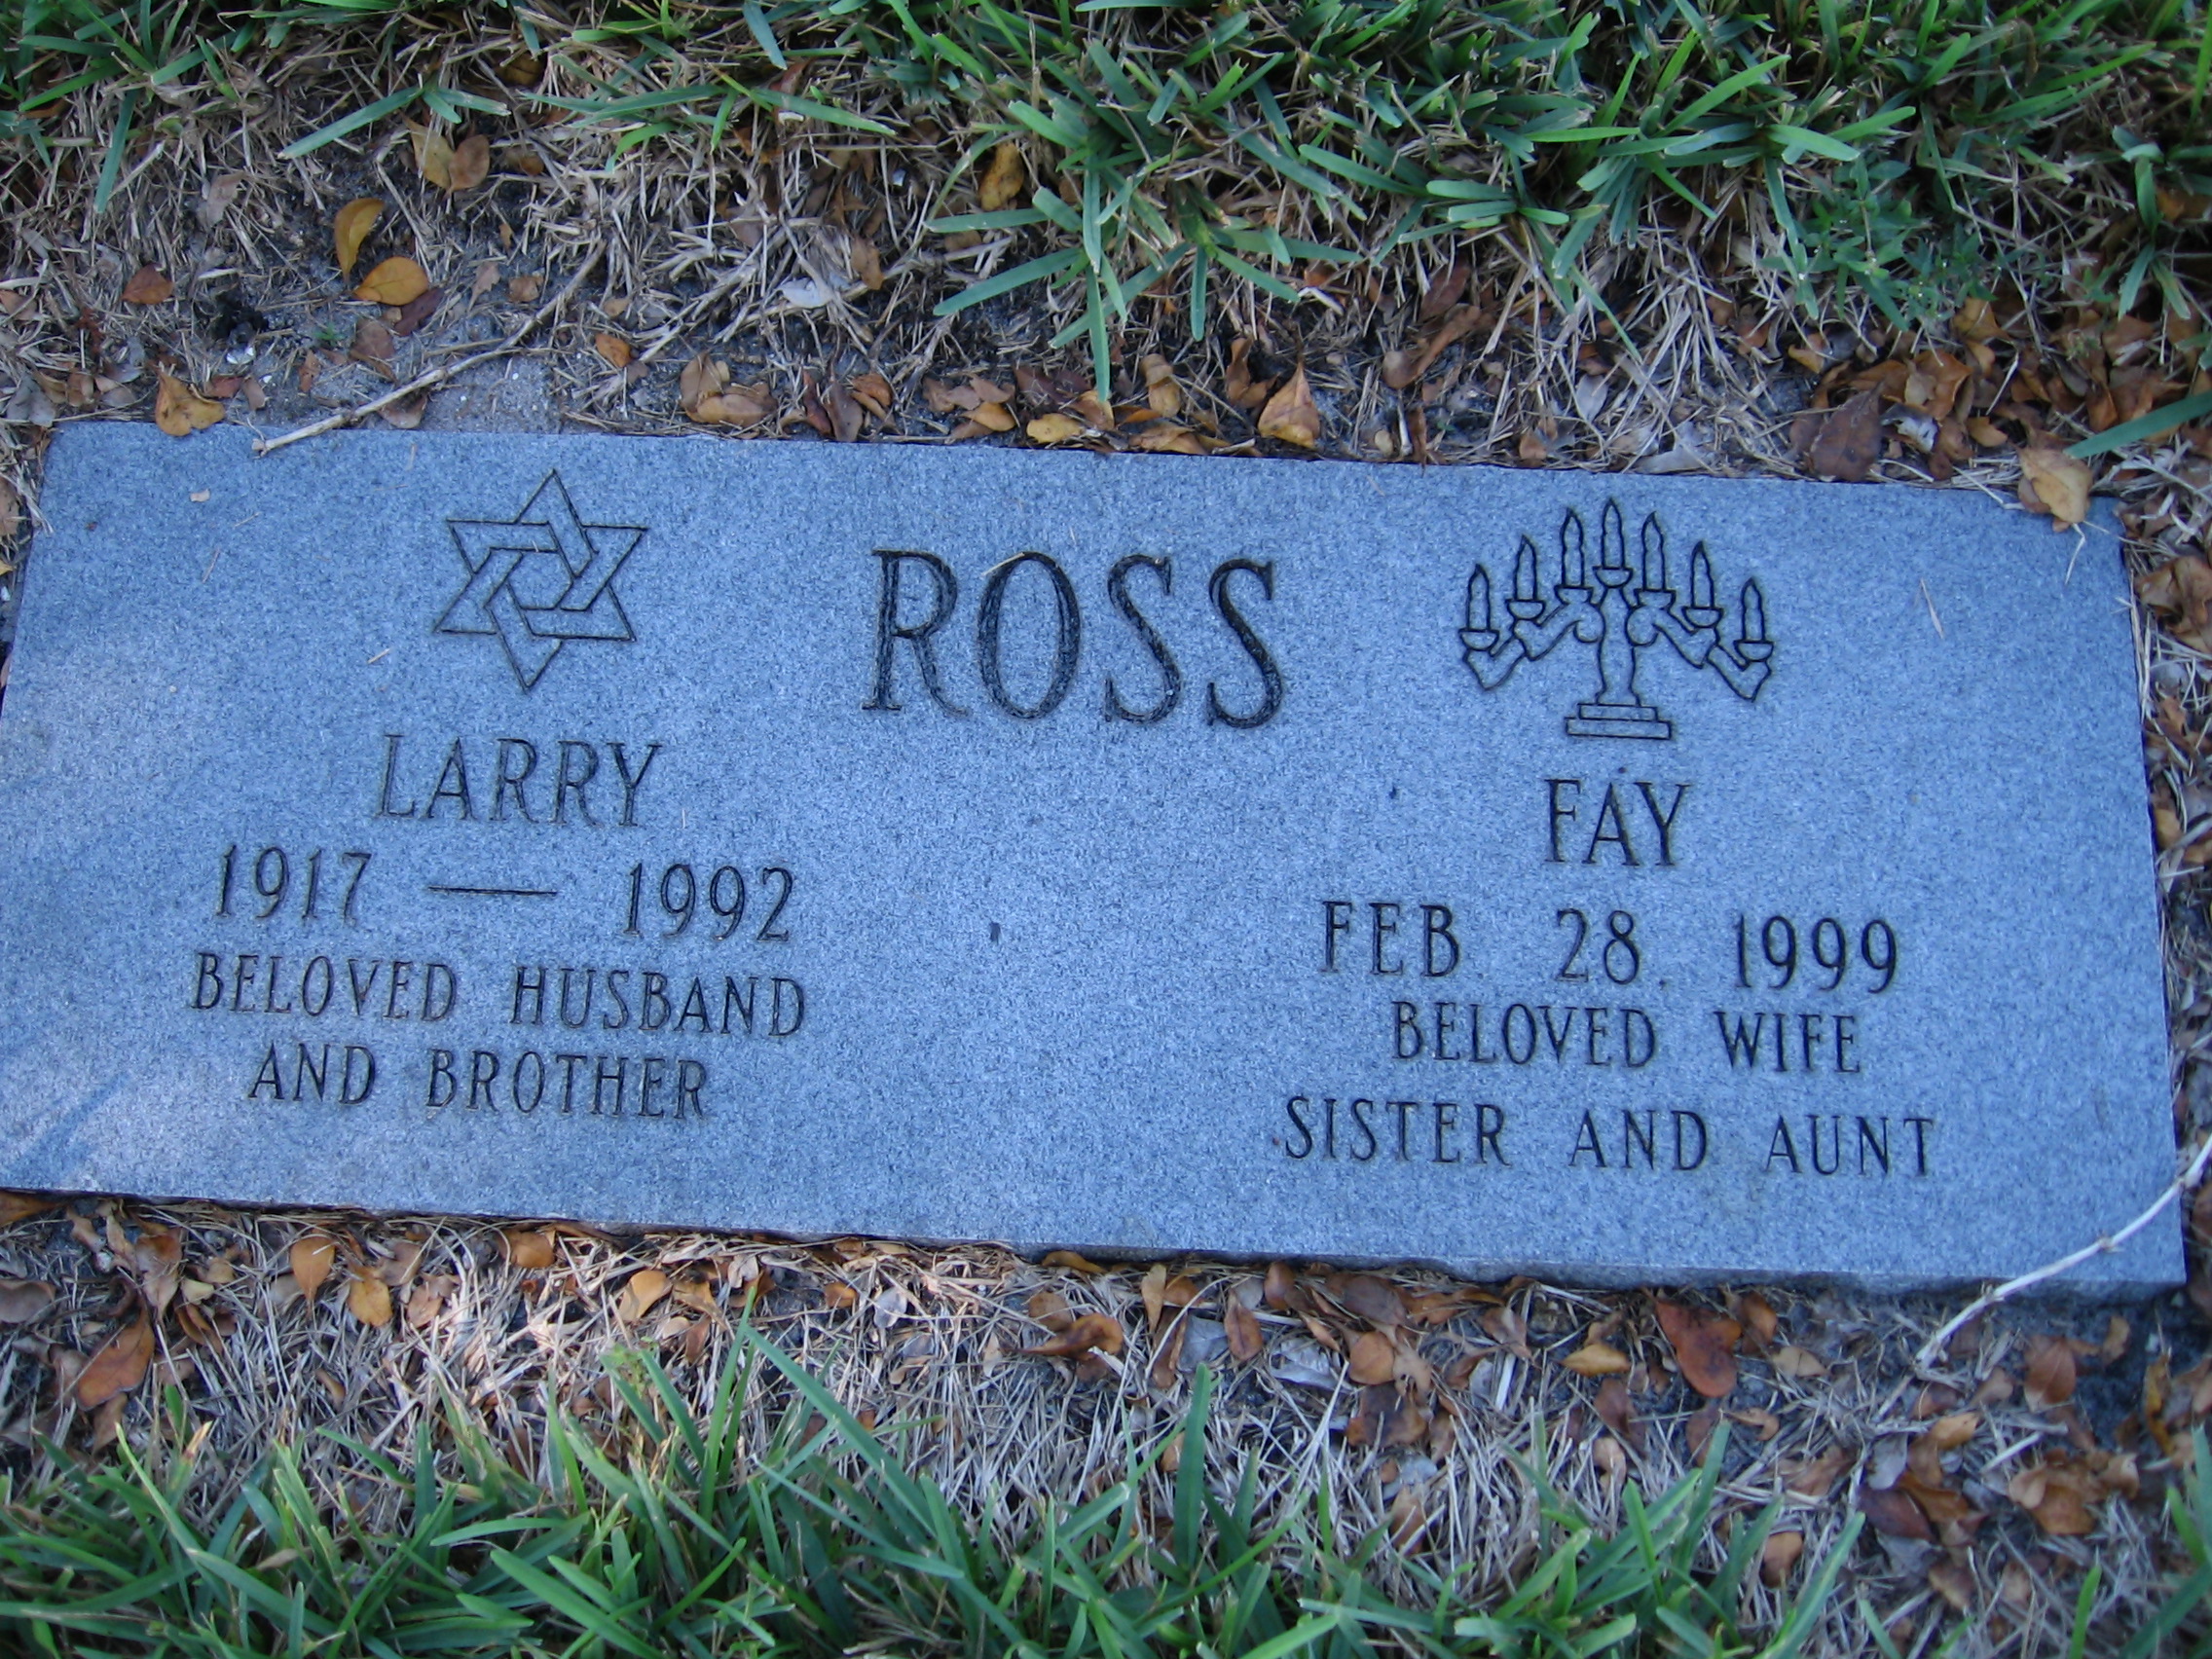 Larry Ross